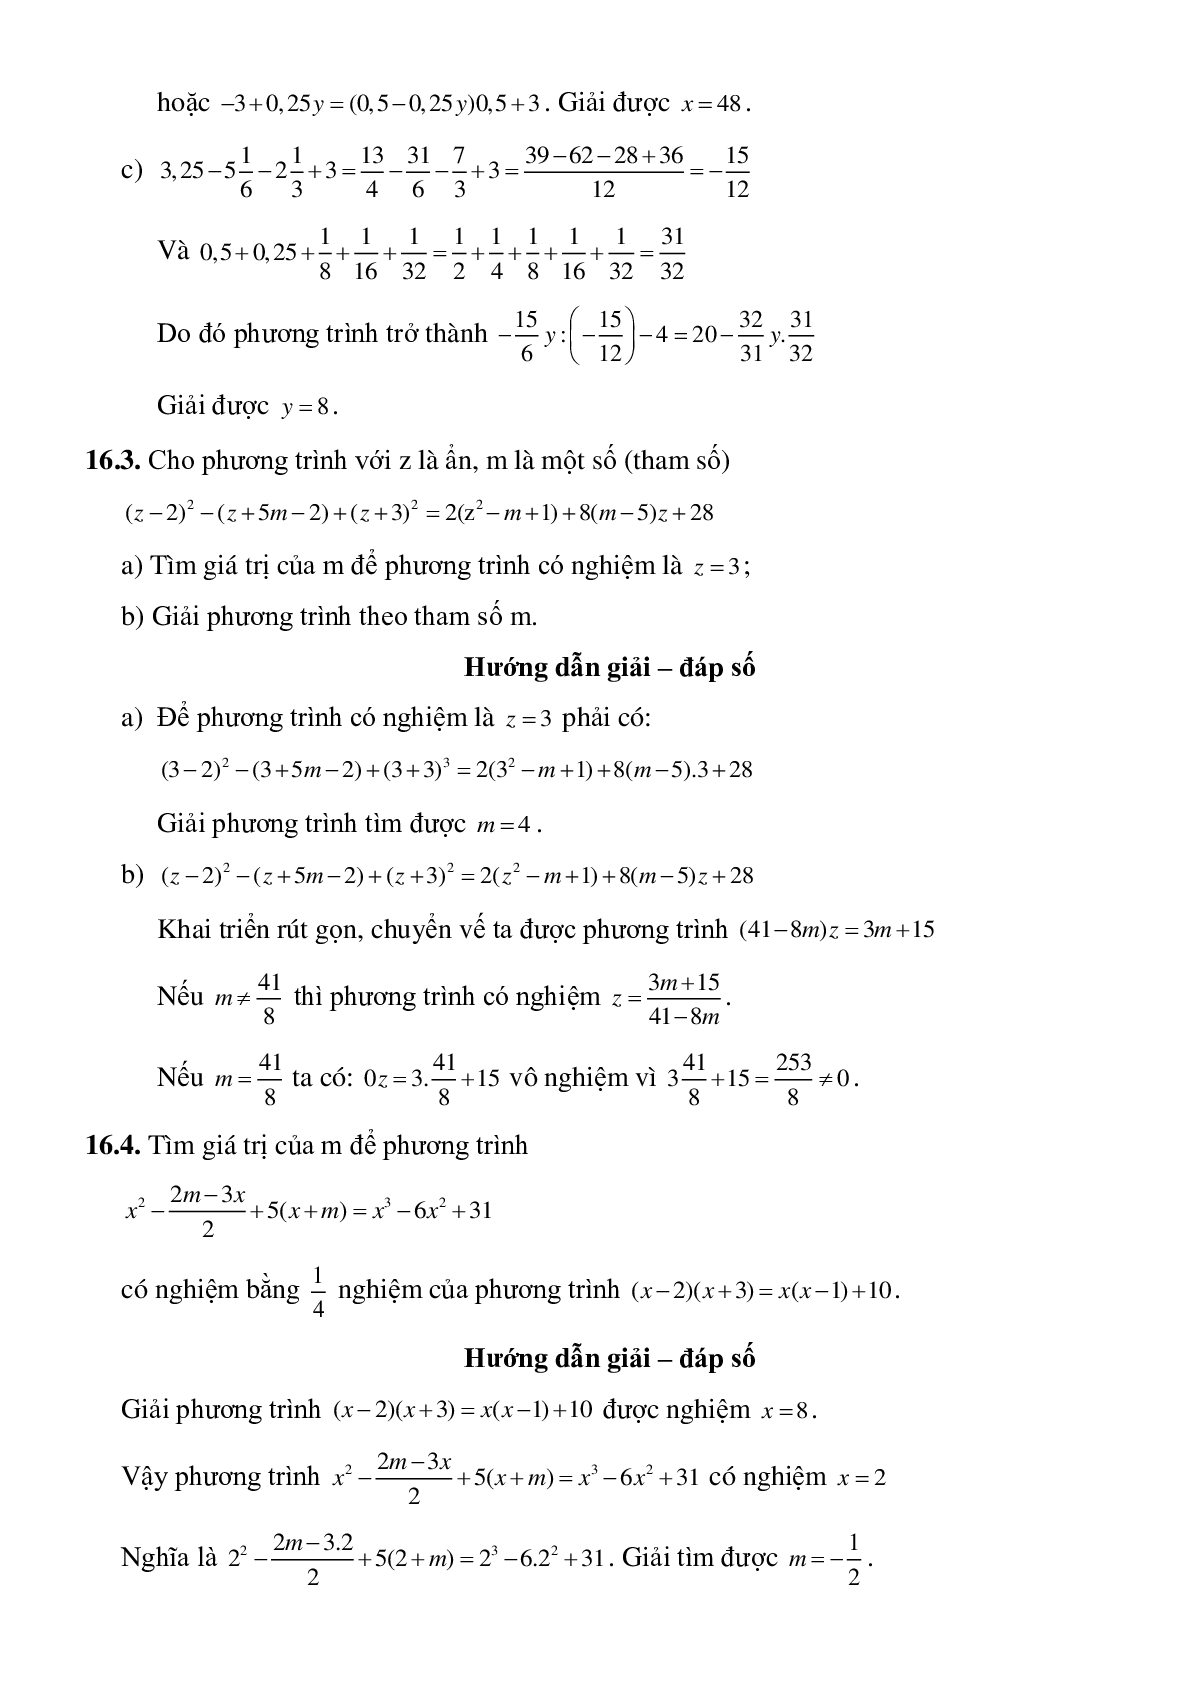 Phương trình đưa được về dạng y=ax+b (trang 8)